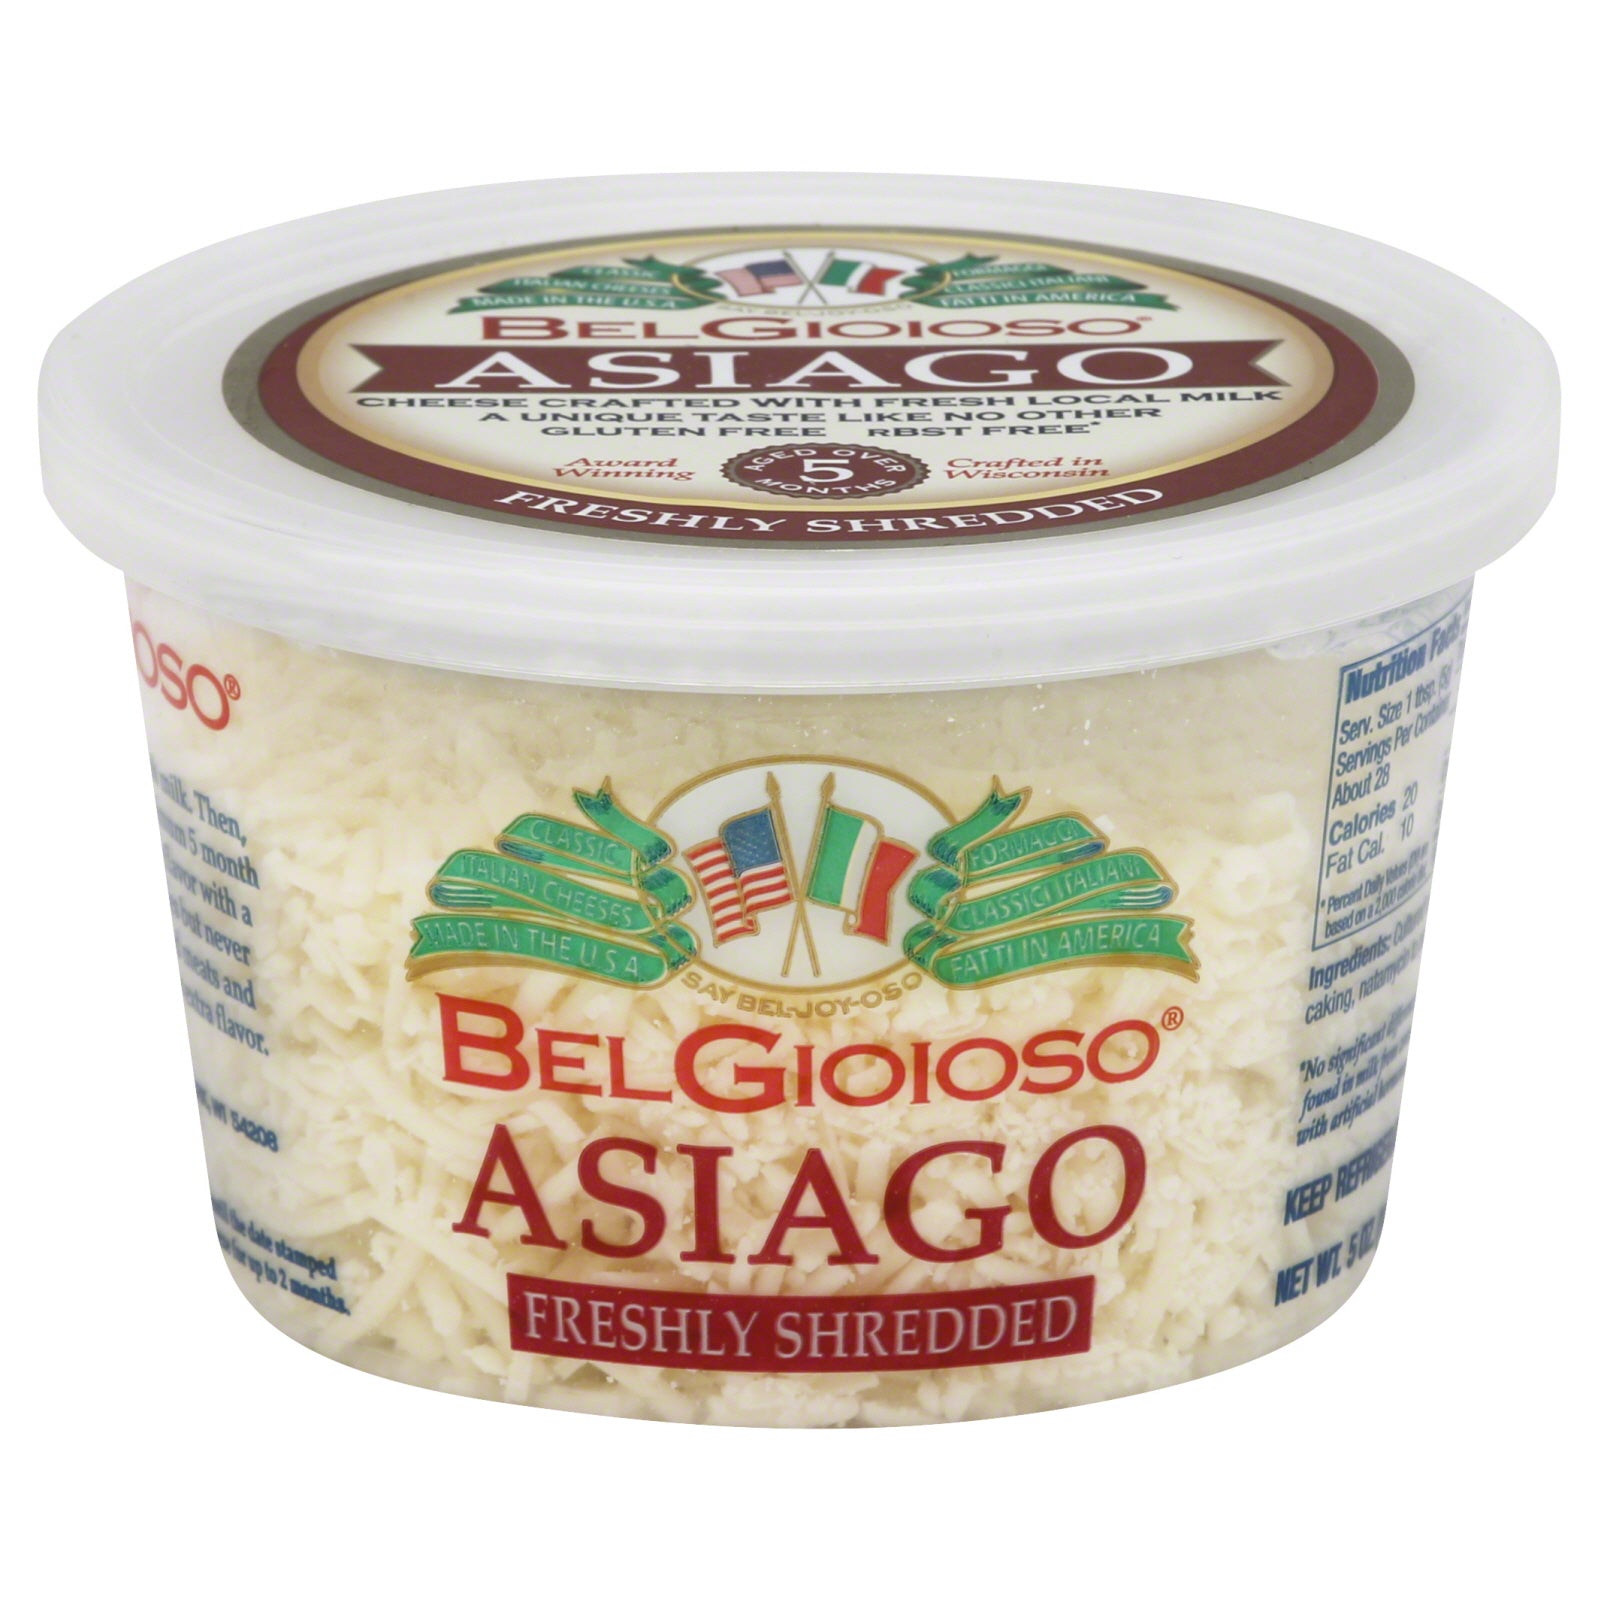 BELGIOIOSO: Shredded Asiago Cheese, 5 oz - Vending Business Solutions